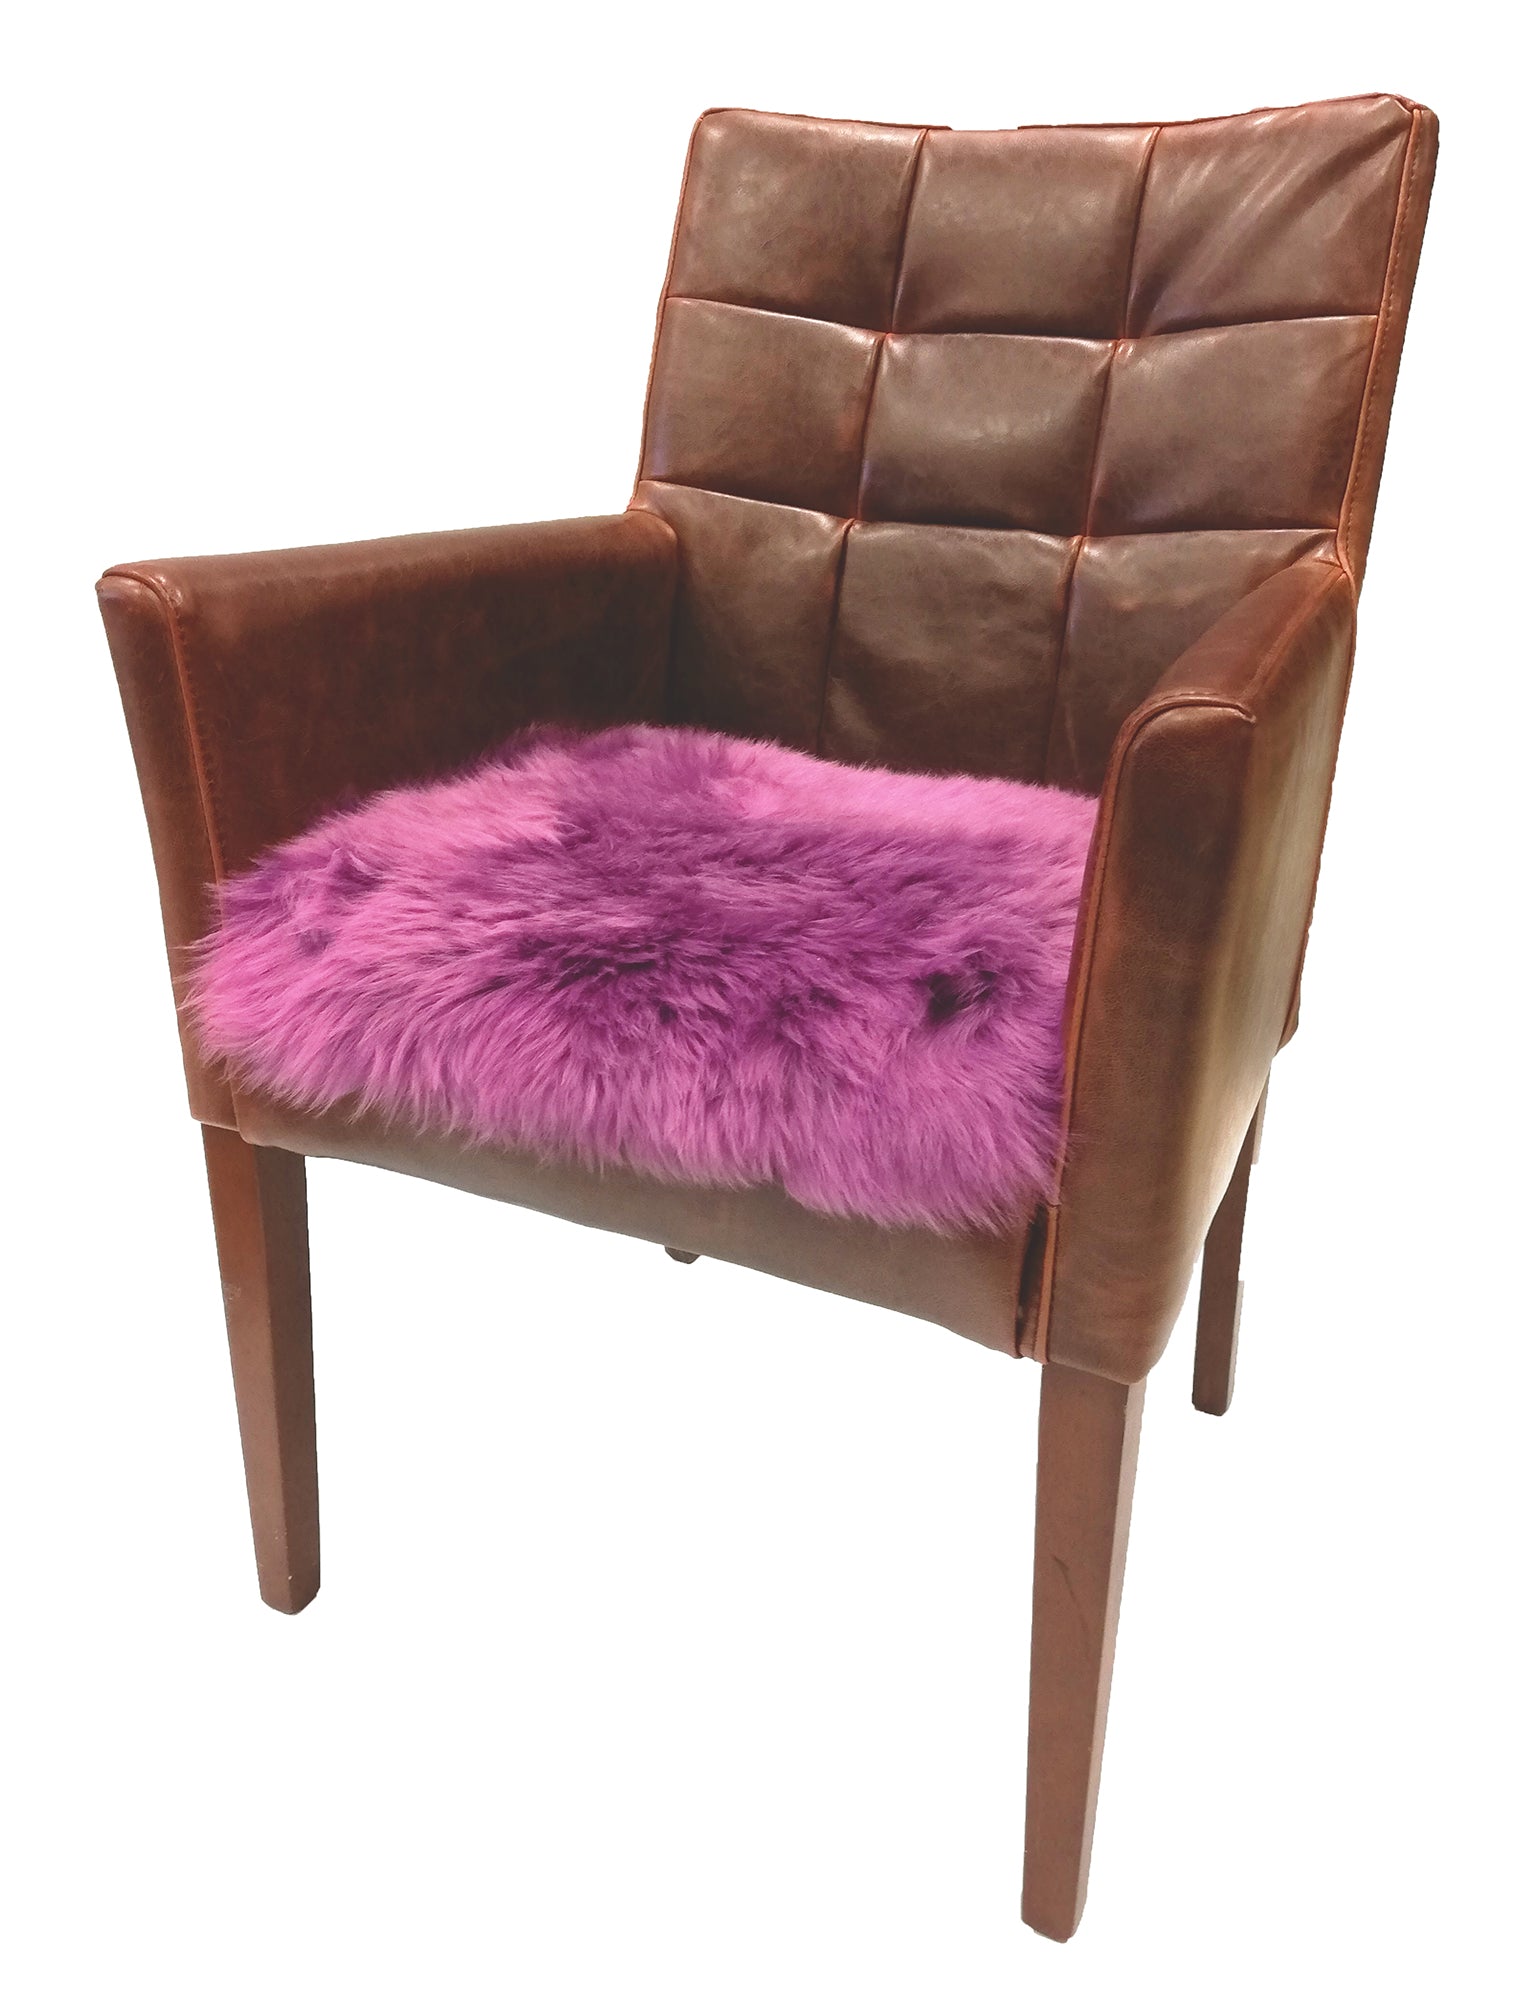 Lammfell Sitzkissen für Stuhl, Eckbank, Couch, Auto und Co. - komfortables  und bequemes Sitzen